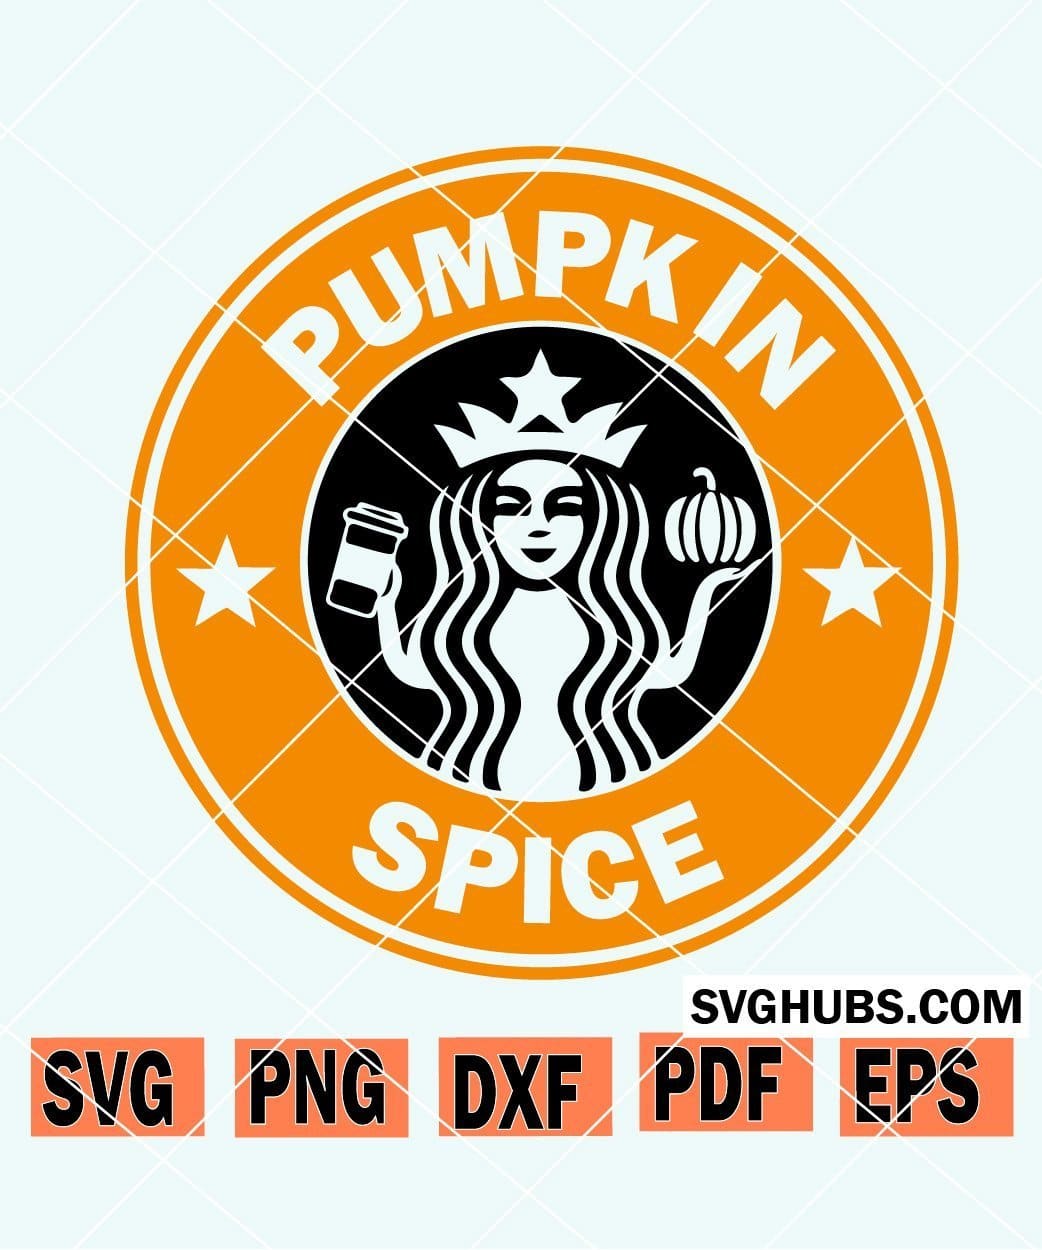 Pumpkin spice SVG